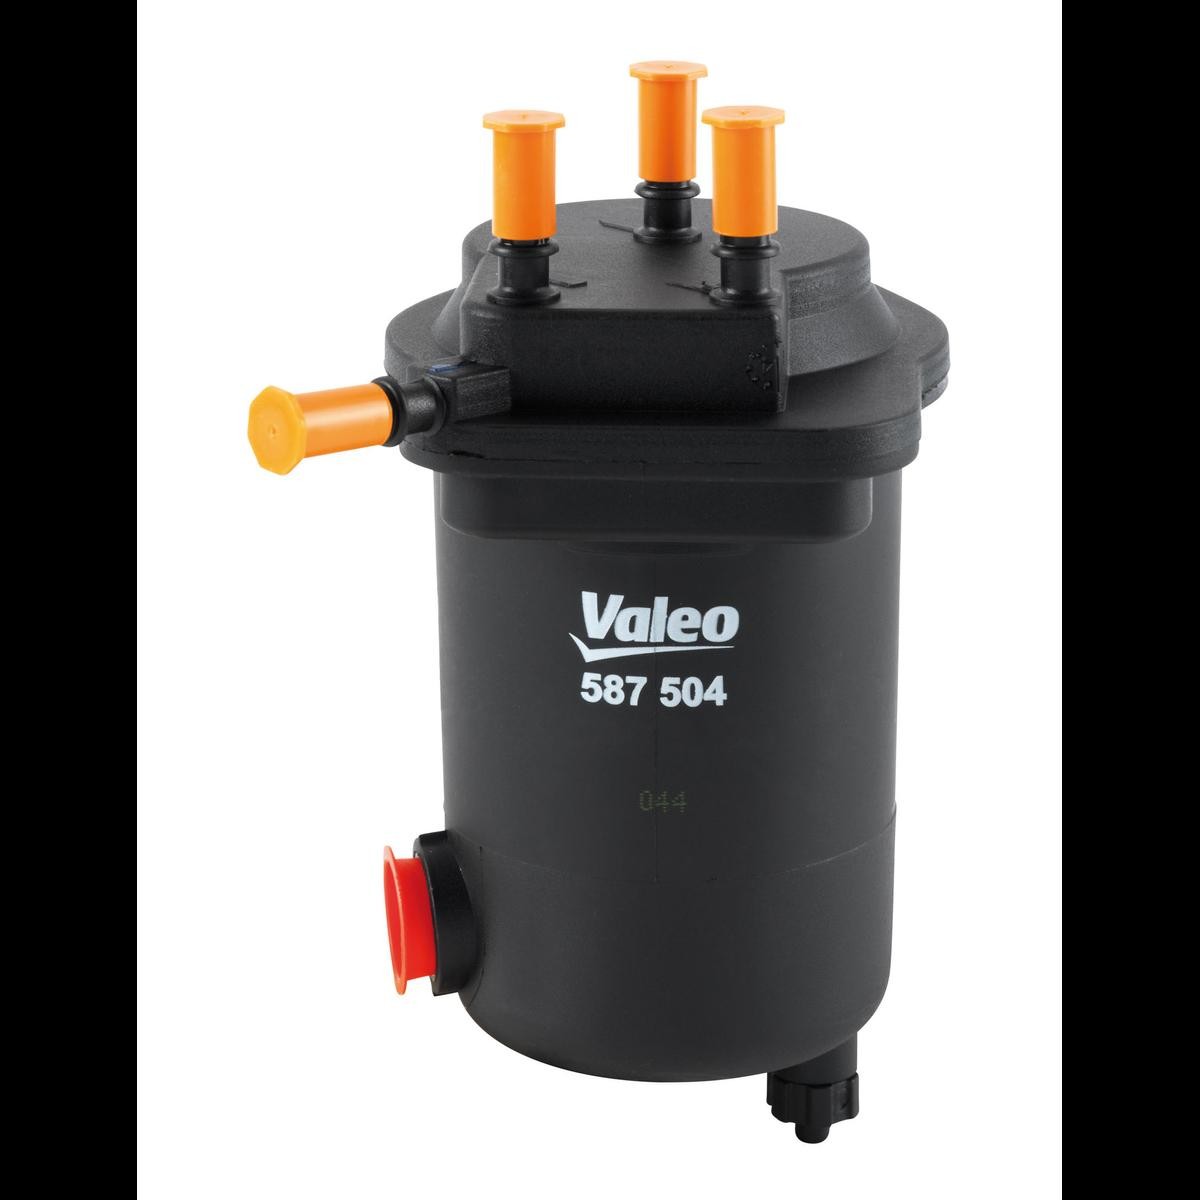 VALEO 587504 Fuel filter 7701061576.